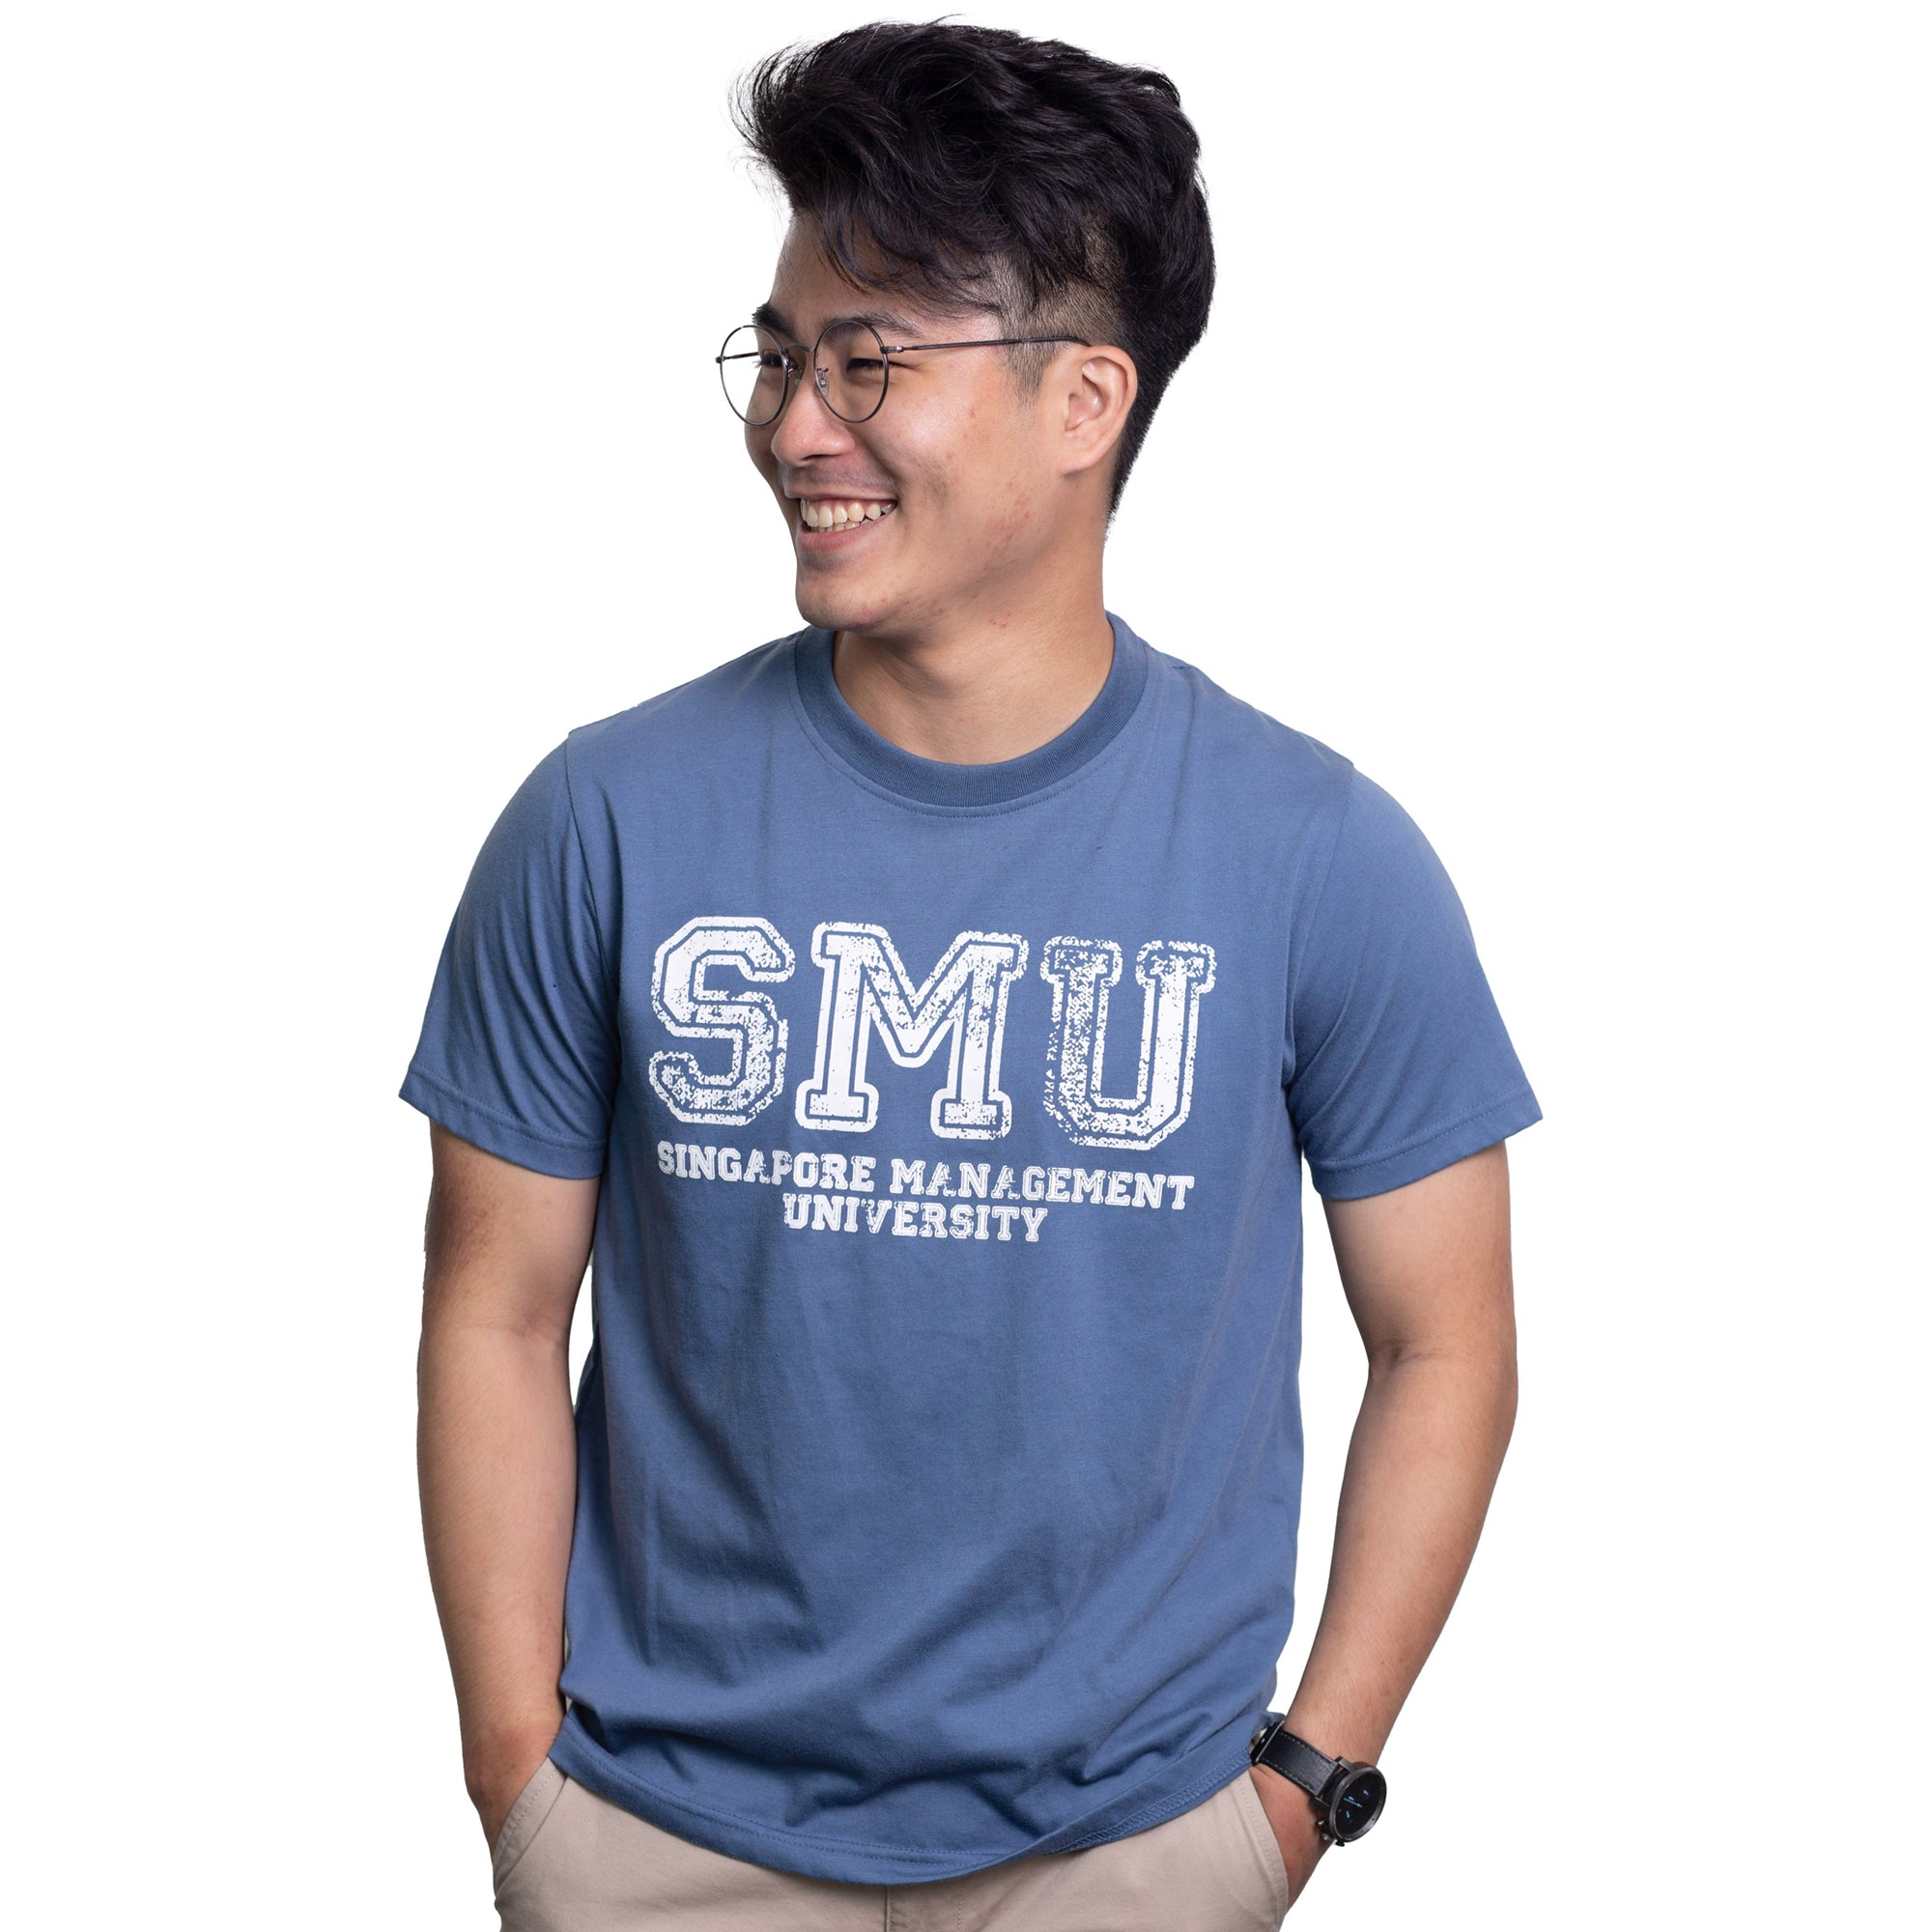 Classic SMU Organic Cotton T-shirt.